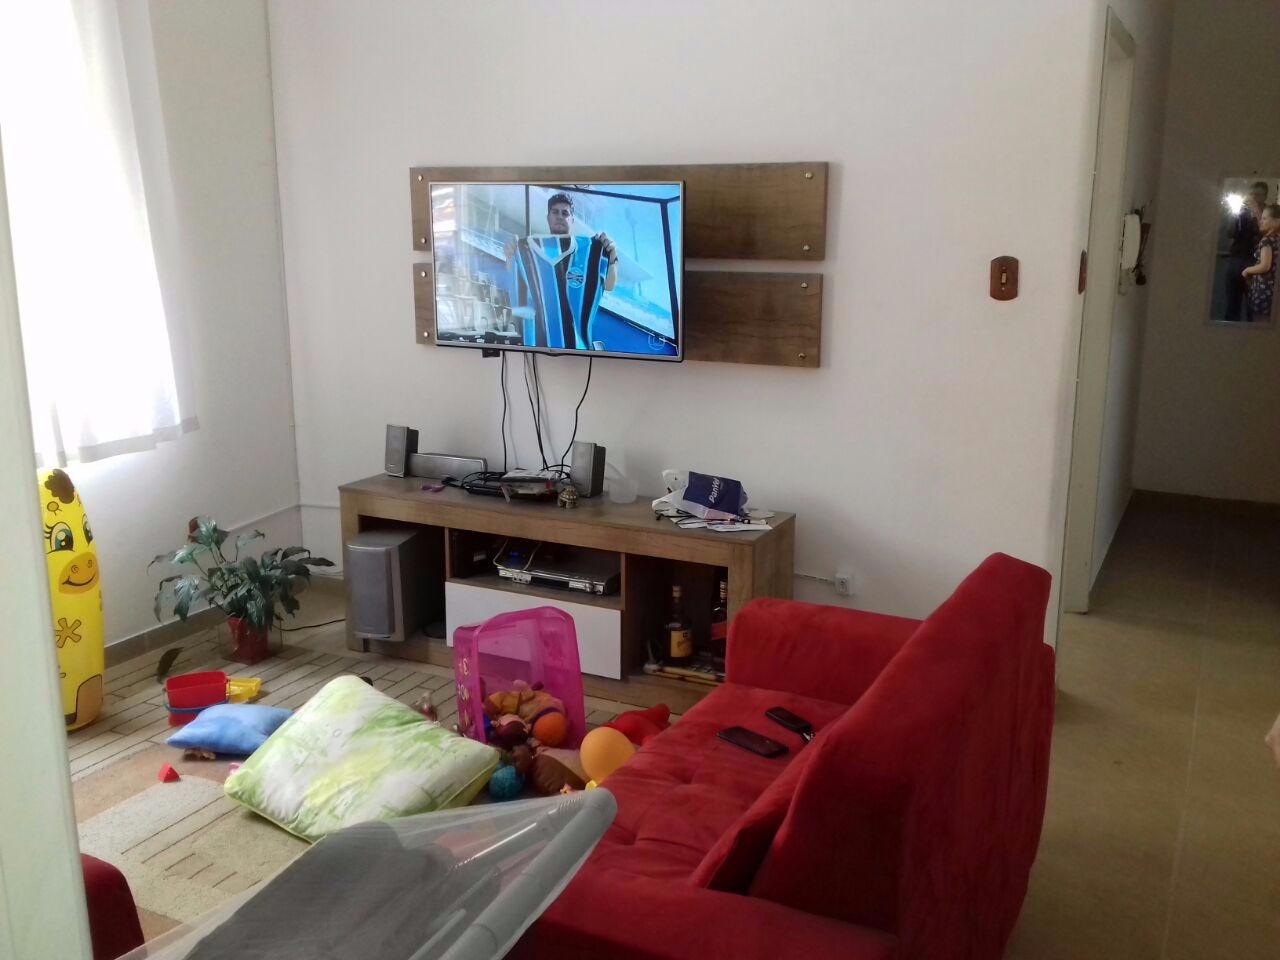 Apartamento com 78m², 3 dormitórios no bairro Cidade Baixa em Porto Alegre para Comprar